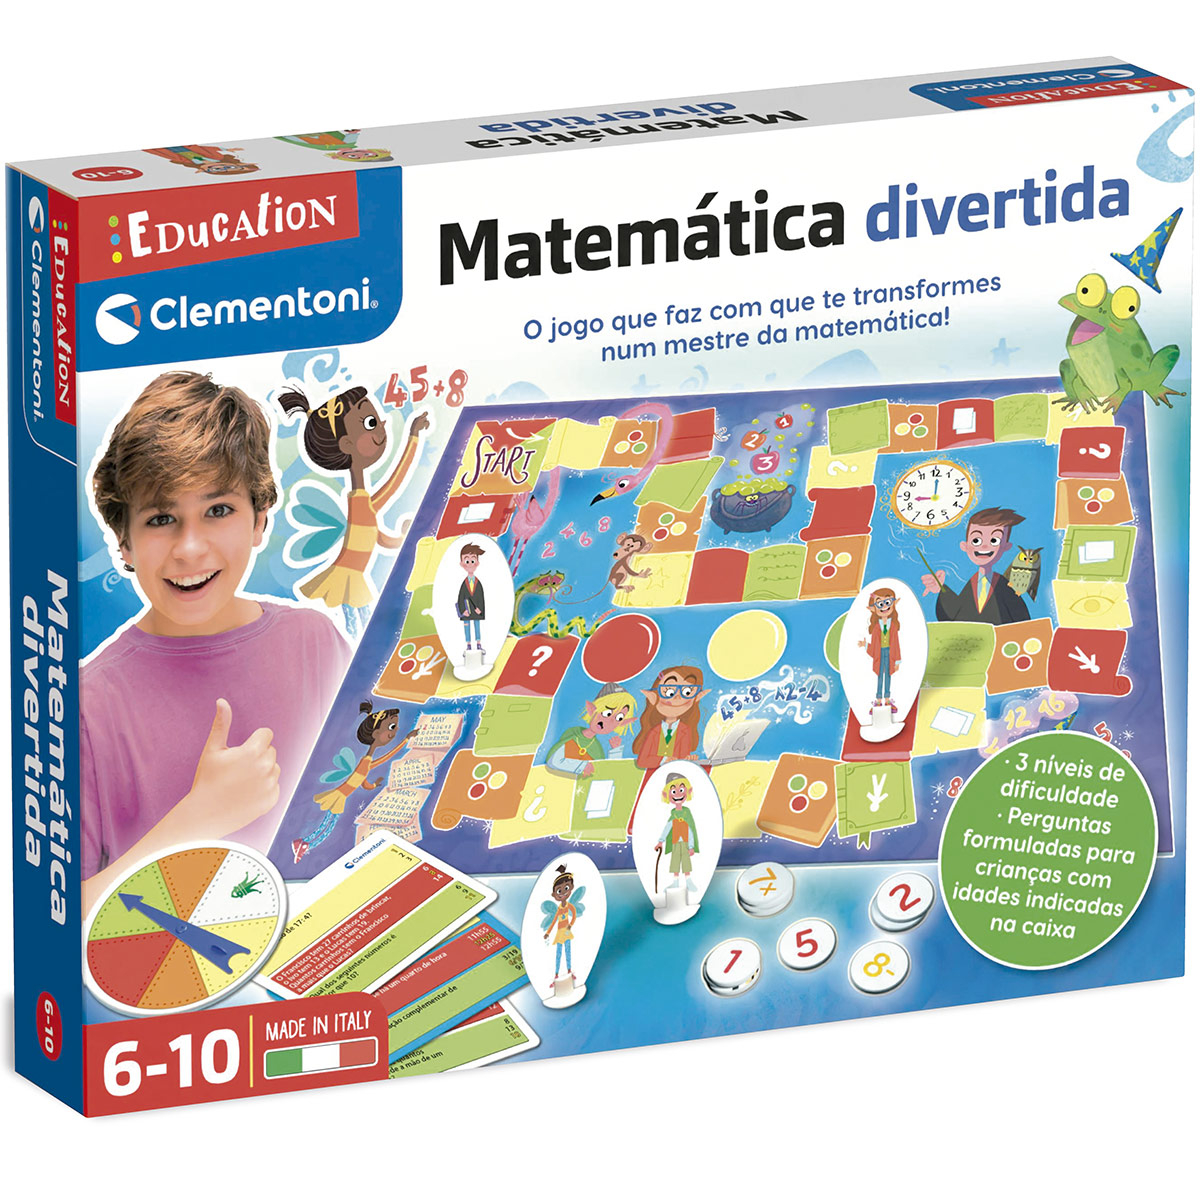 Jogos de matemática divertidos para crianças - Kumon Portugal